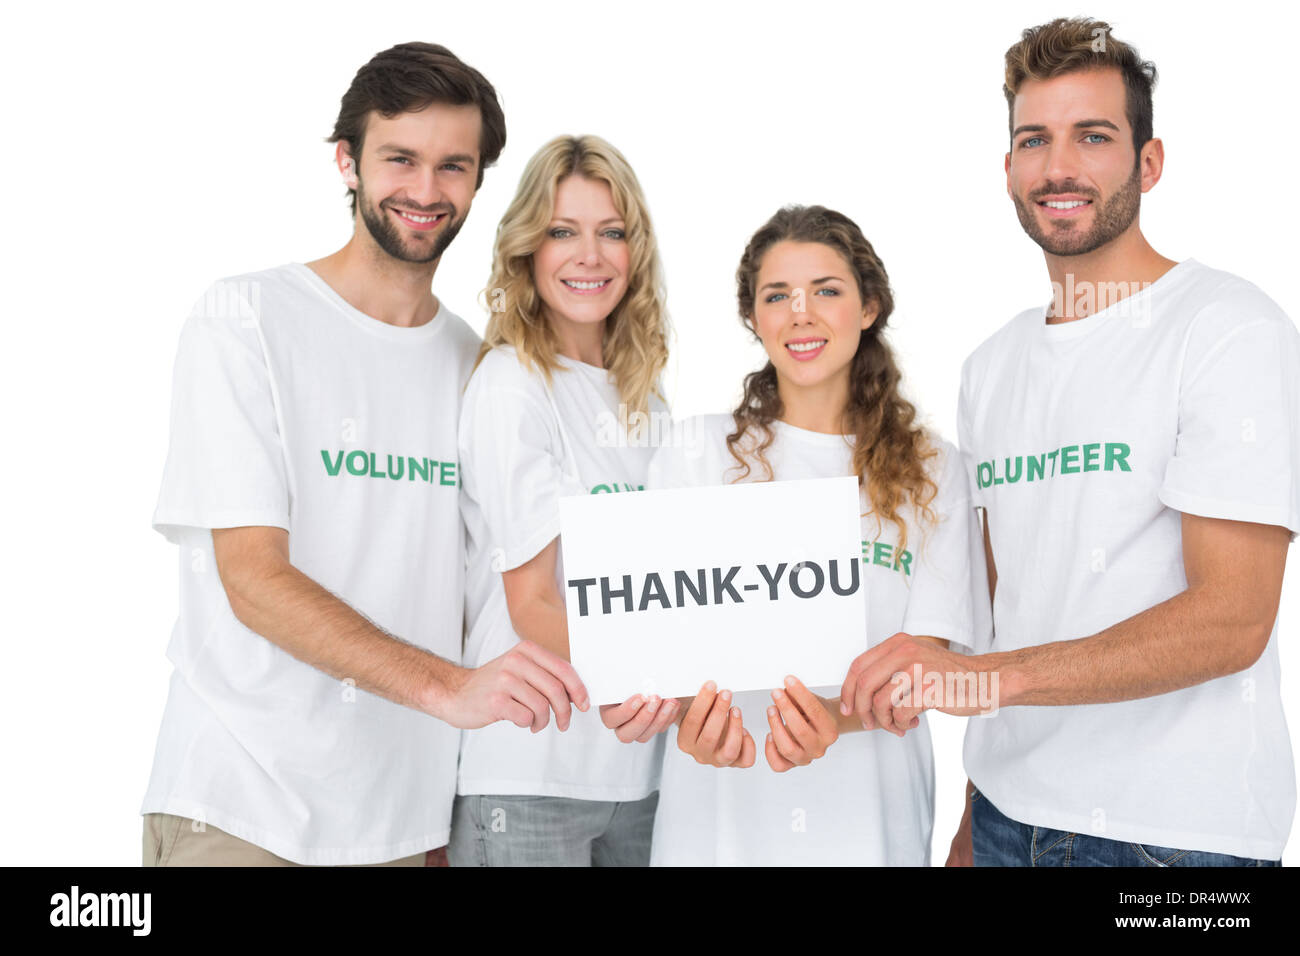 Retrato de la feliz celebración de voluntarios 'gracias' junta Foto de stock